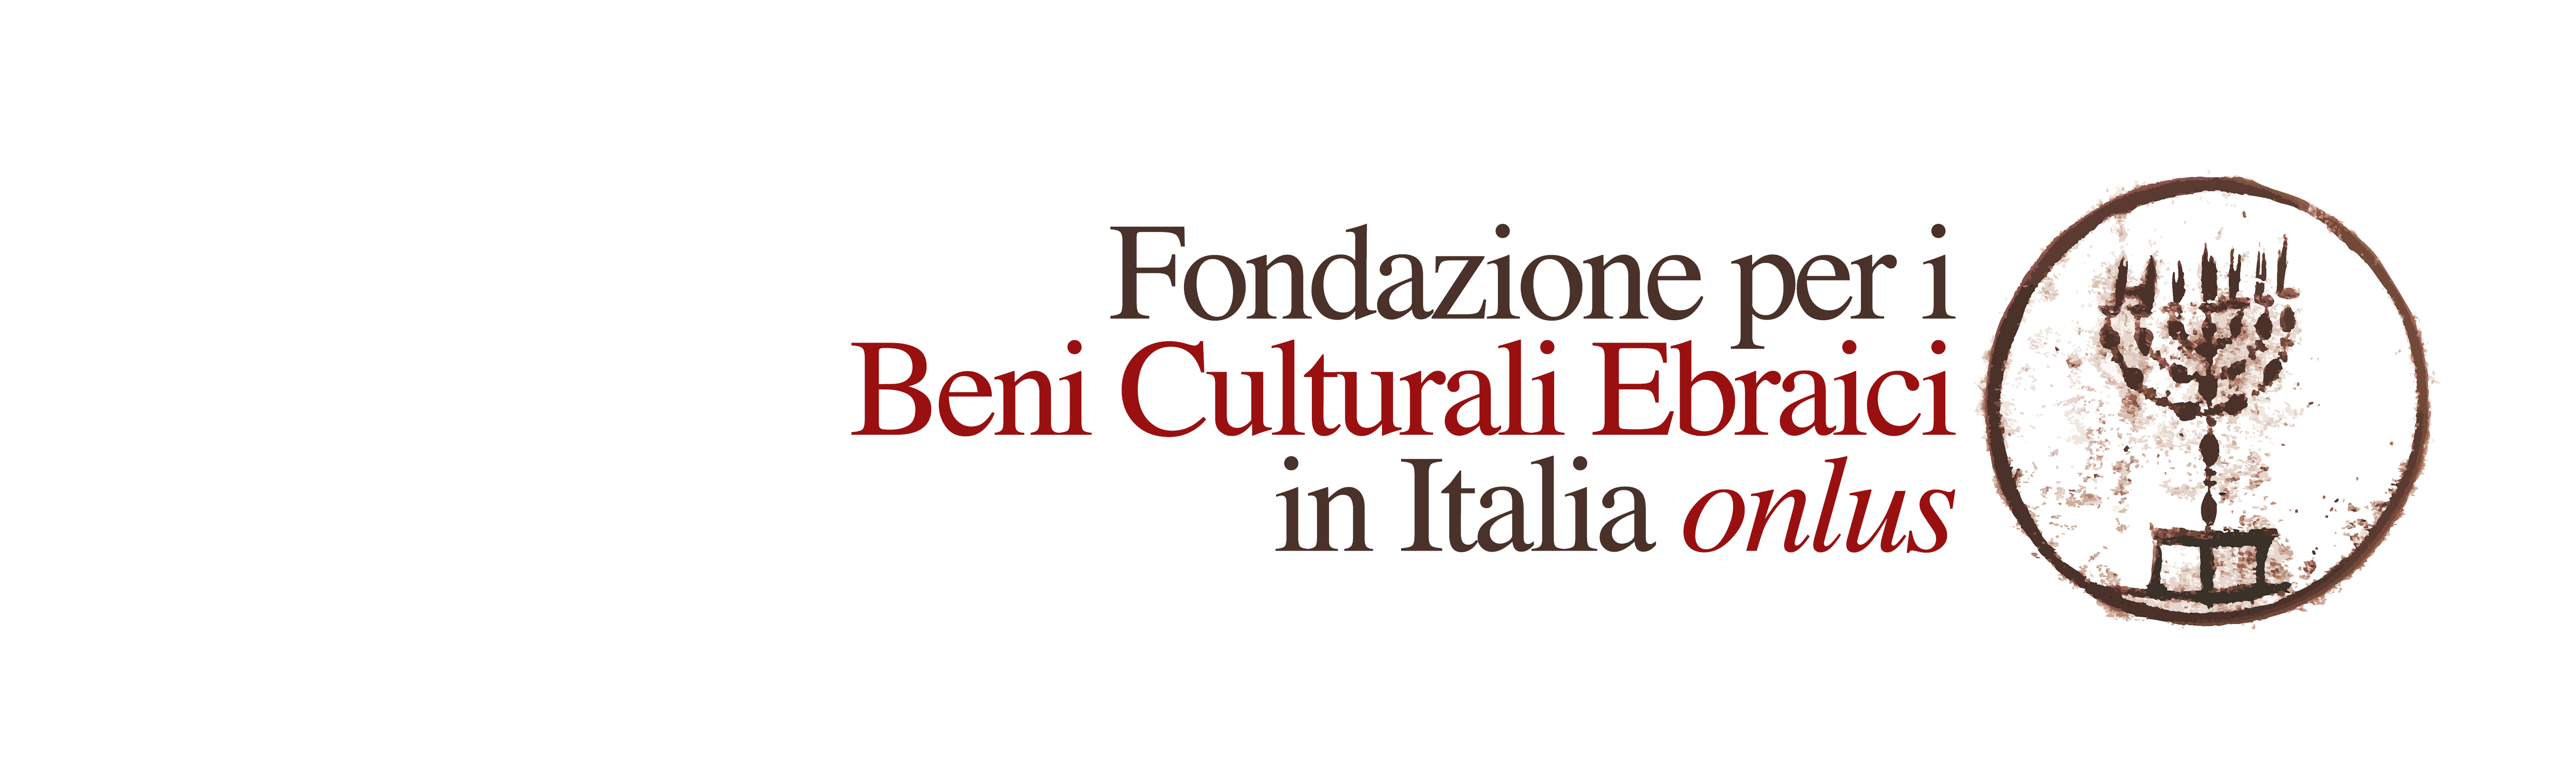 Fondazione per i beni culturali Ebraici in Italia